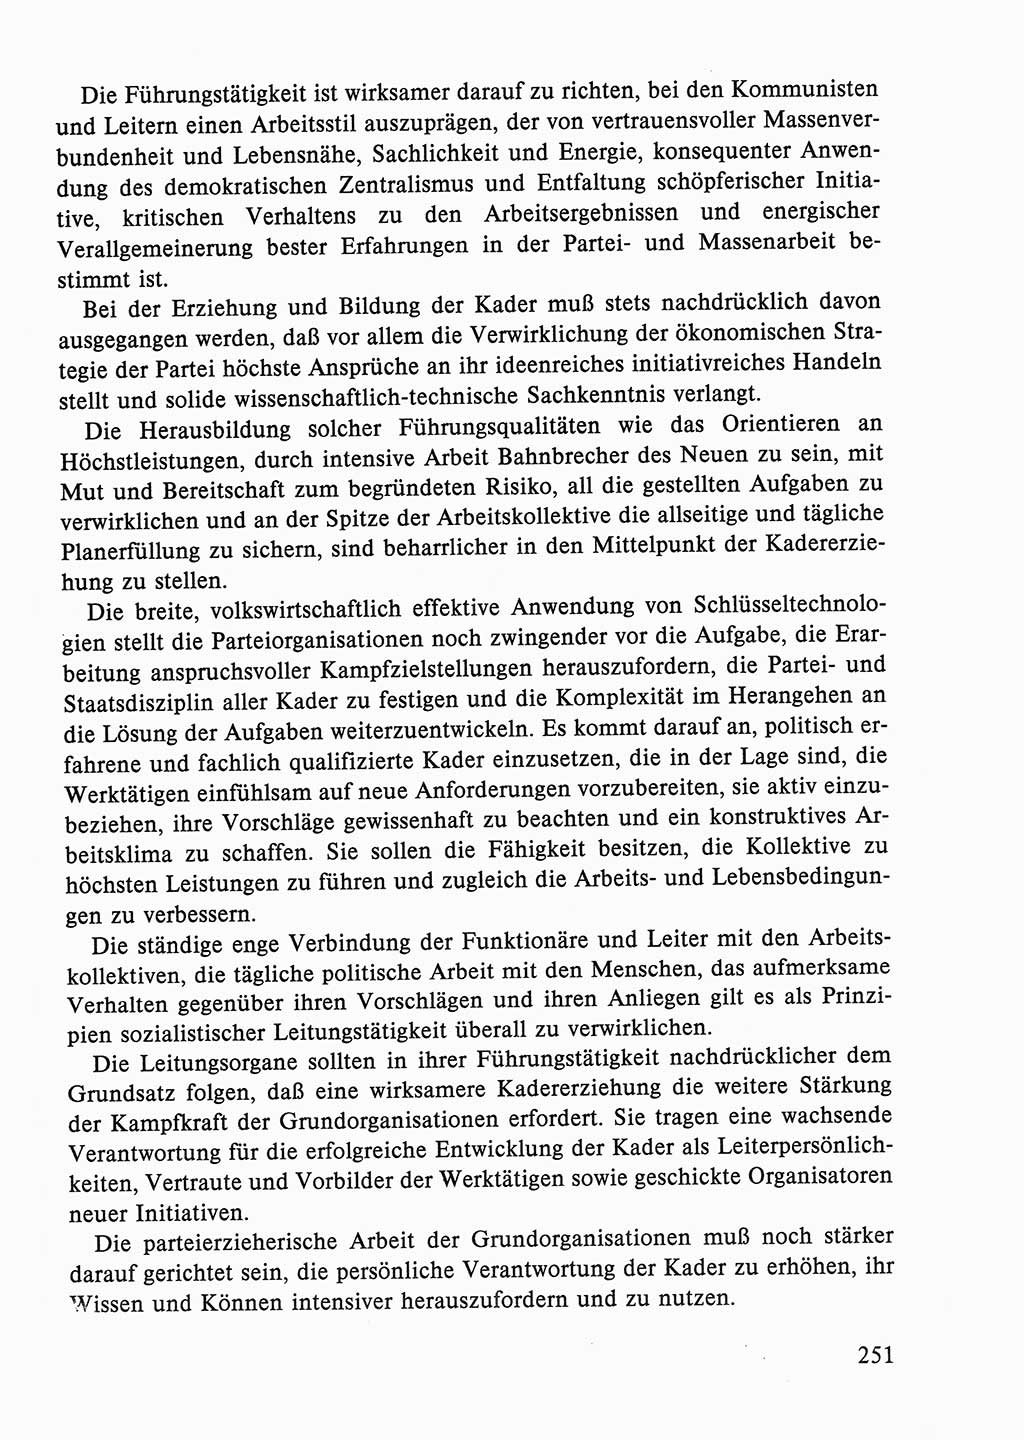 Dokumente der Sozialistischen Einheitspartei Deutschlands (SED) [Deutsche Demokratische Republik (DDR)] 1986-1987, Seite 251 (Dok. SED DDR 1986-1987, S. 251)